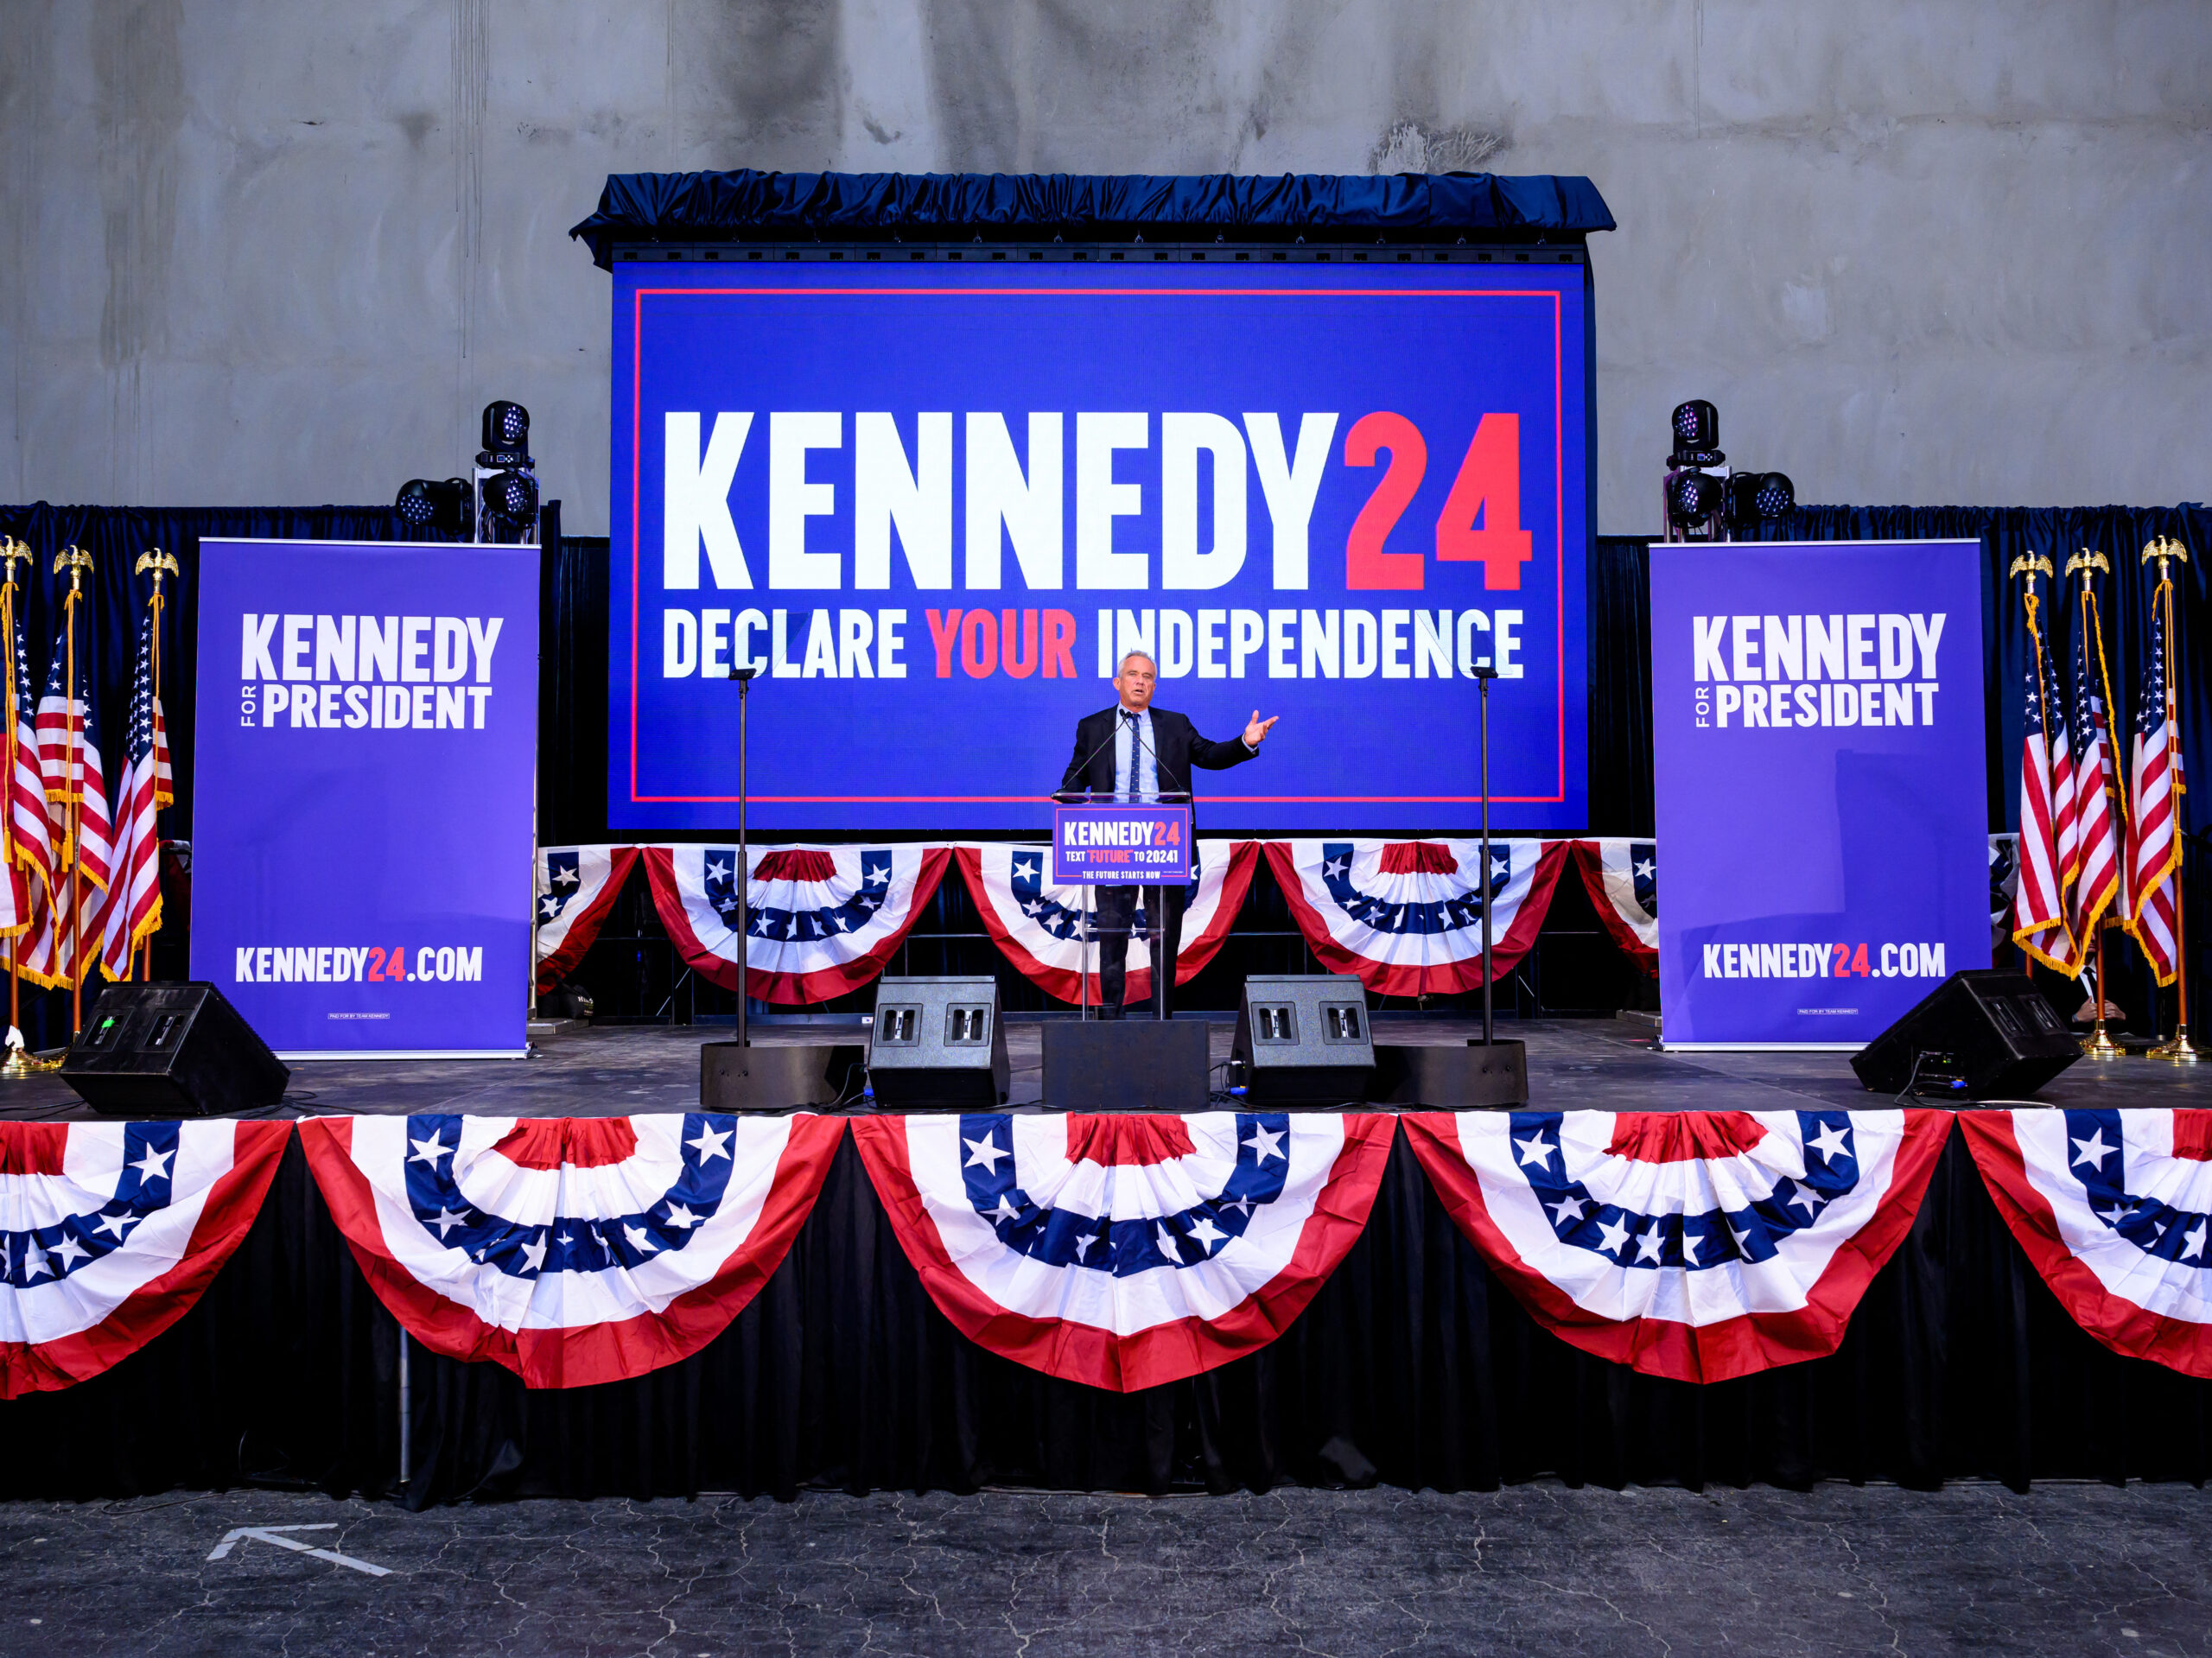 The Kennedys are endorsing Biden, not their family member RFK Jr.